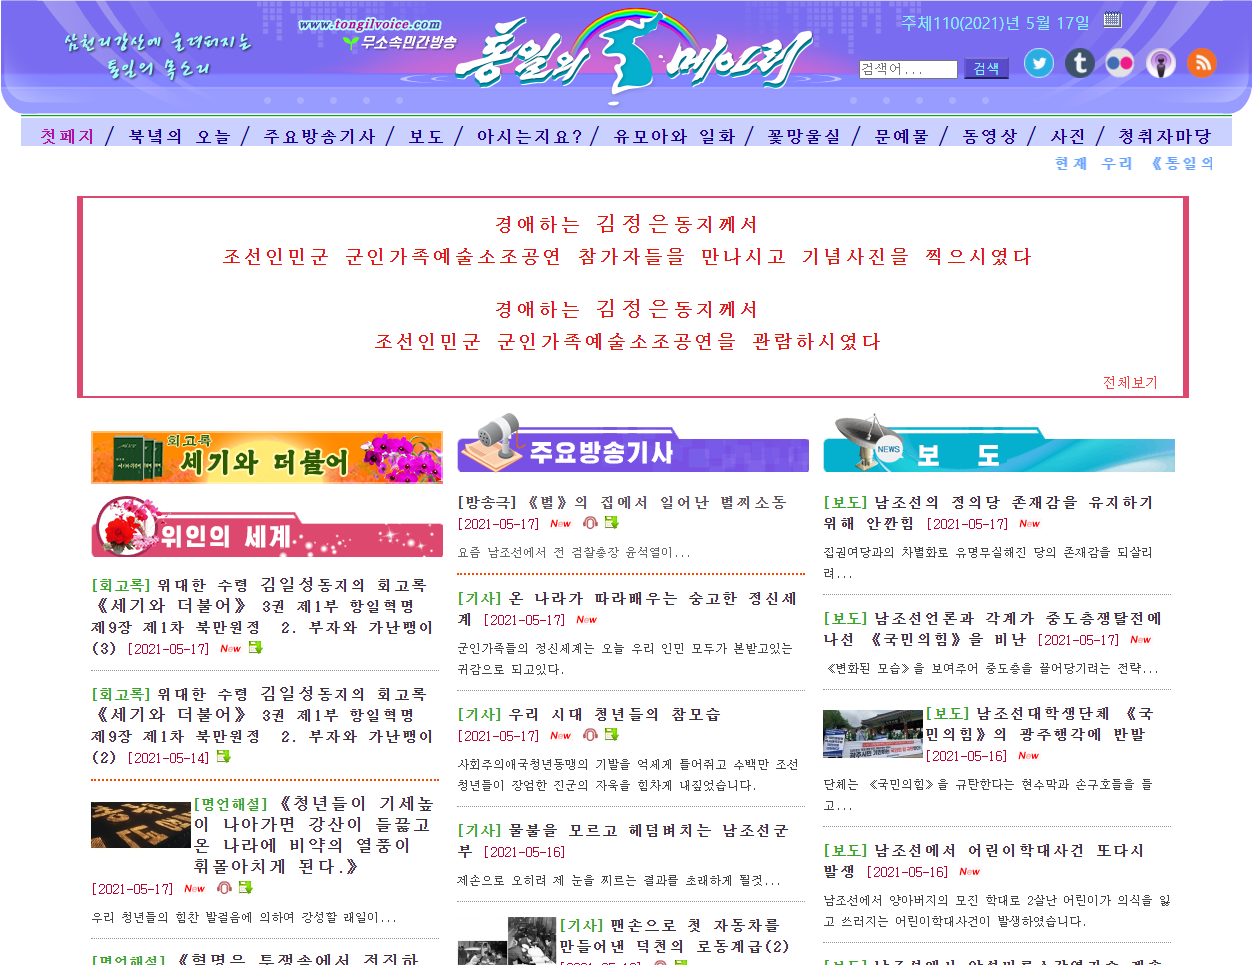 북한의 대외선전매체 ‘통일의 메아리’ 홈페이지 화면